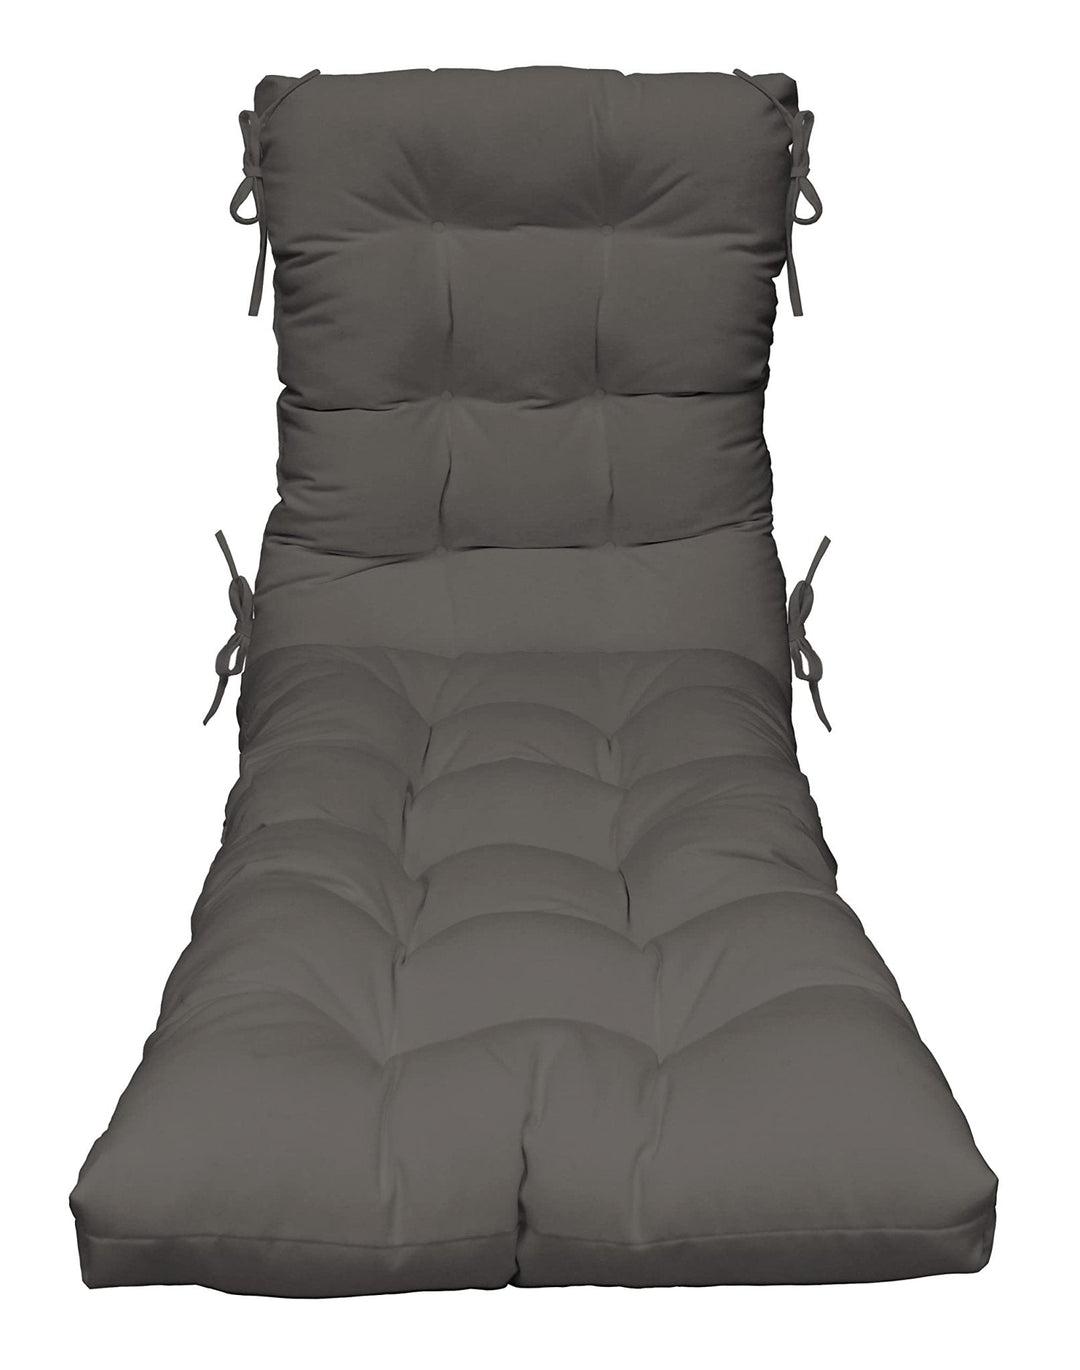 Chaise Lounge Chair Cushion | Tufted | 72" H x 22" W | Sunbrella Canvas Charcoal - RSH Decor